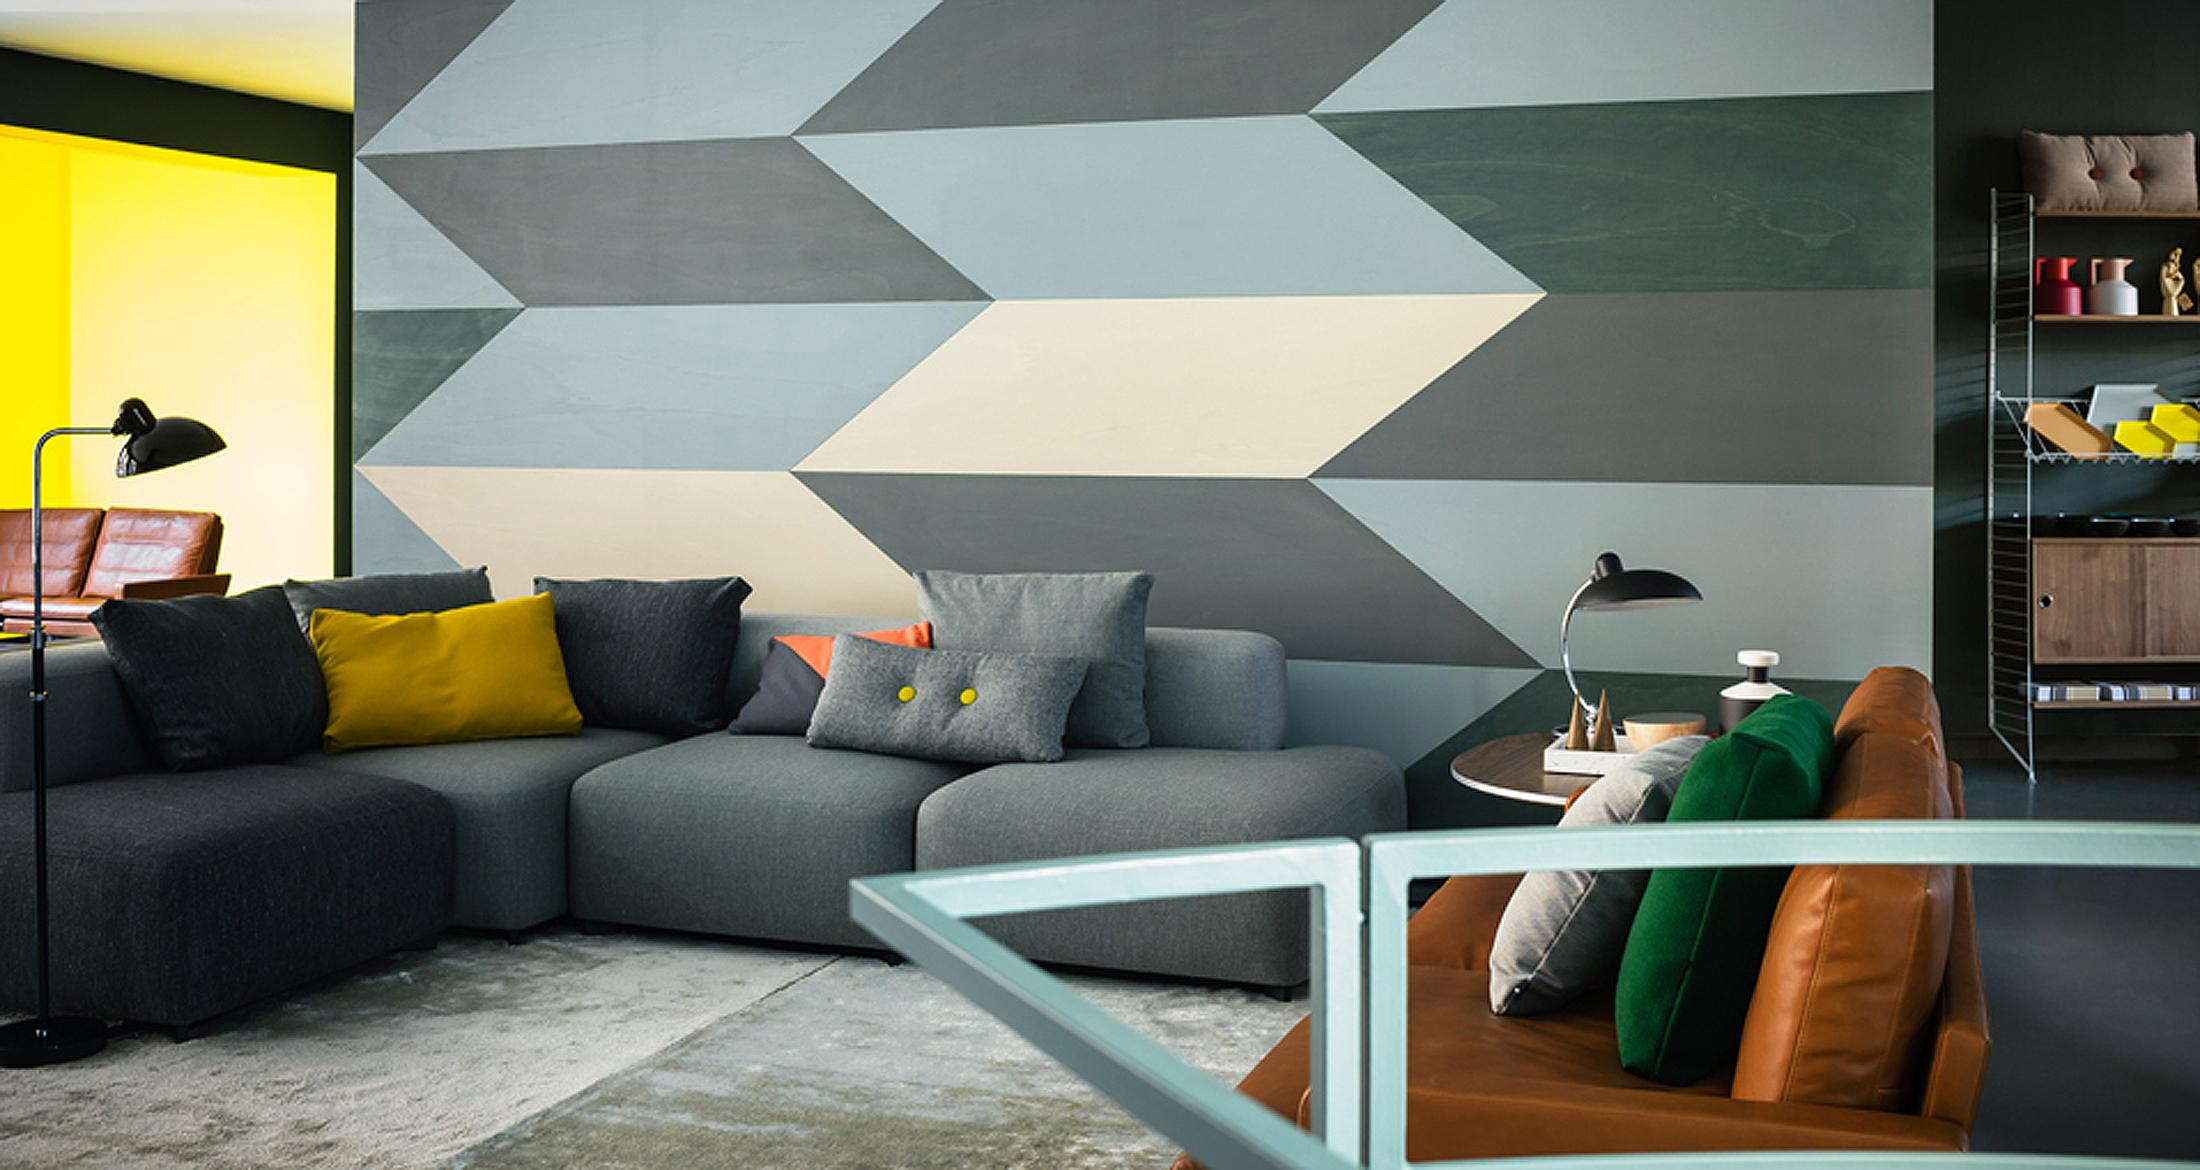 Geometrisches Muster als Wandgestaltung #retro #ledersofa #wandgestaltung #stehlampe #sofa #grauessofa #blauessofa #zimmergestaltung ©Fritz Hansen